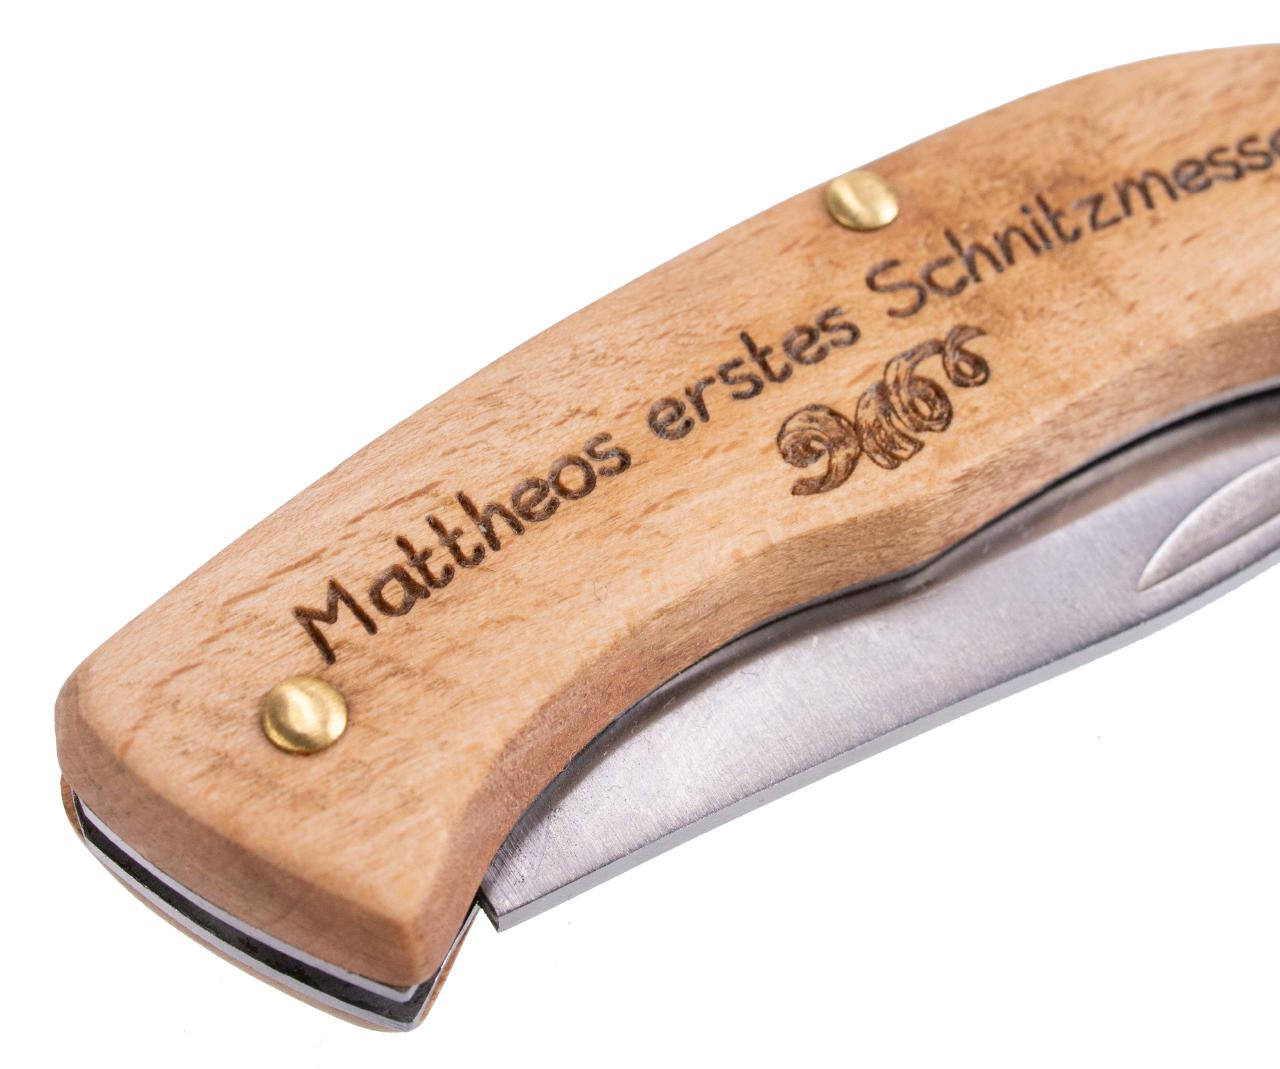 Kindersicheres Schnitzmesser aus Holz personalisiertes Taschenmesser mit Wunschname